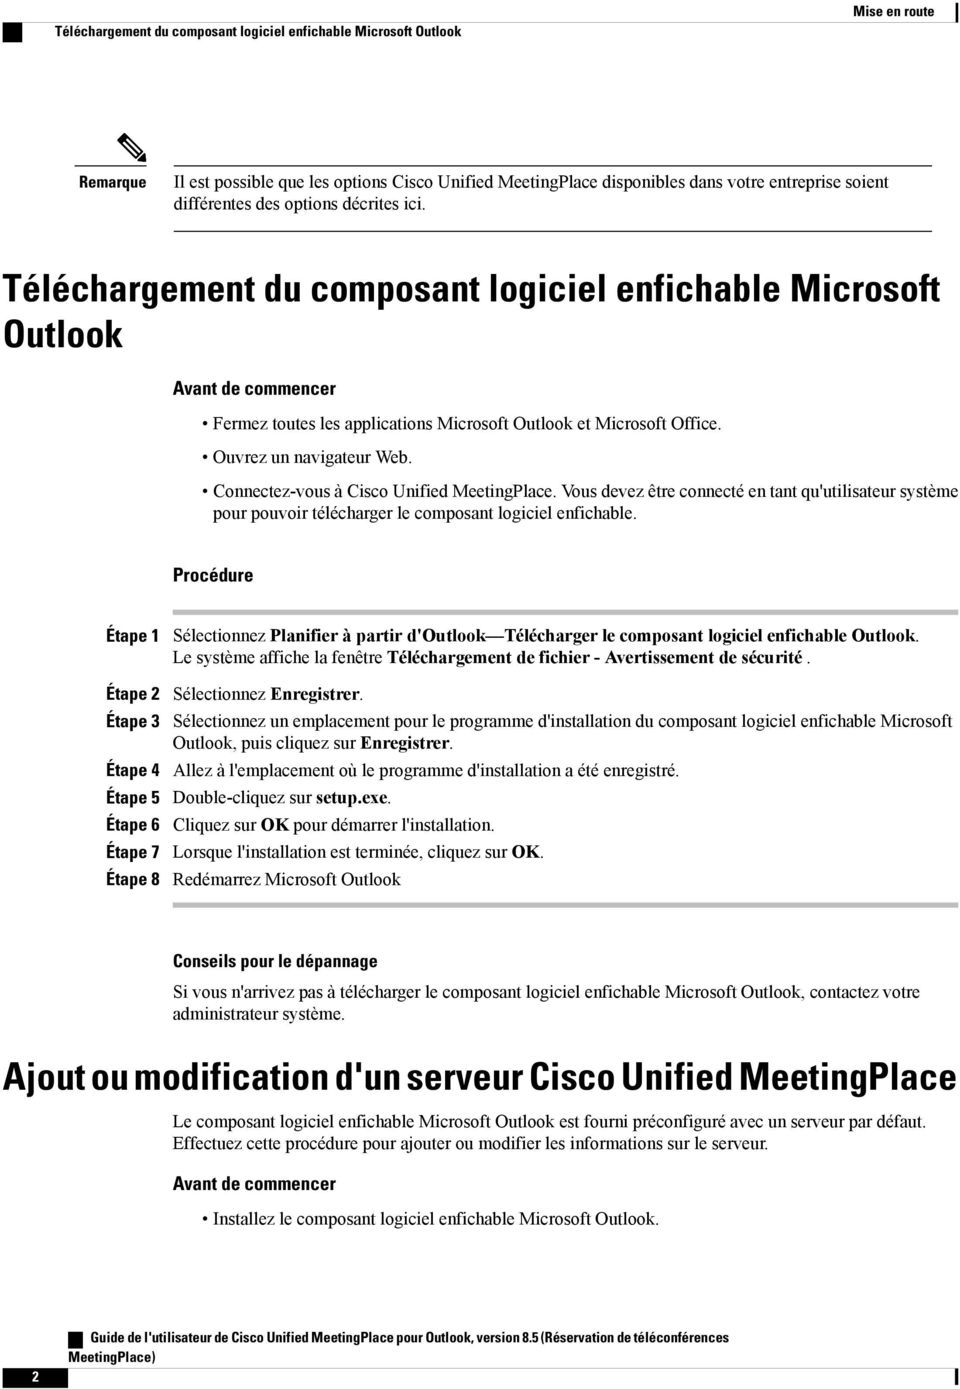 Ouvrez un navigateur Web. Connectez-vous à Cisco Unified MeetingPlace. Vous devez être connecté en tant qu'utilisateur système pour pouvoir télécharger le composant logiciel enfichable.